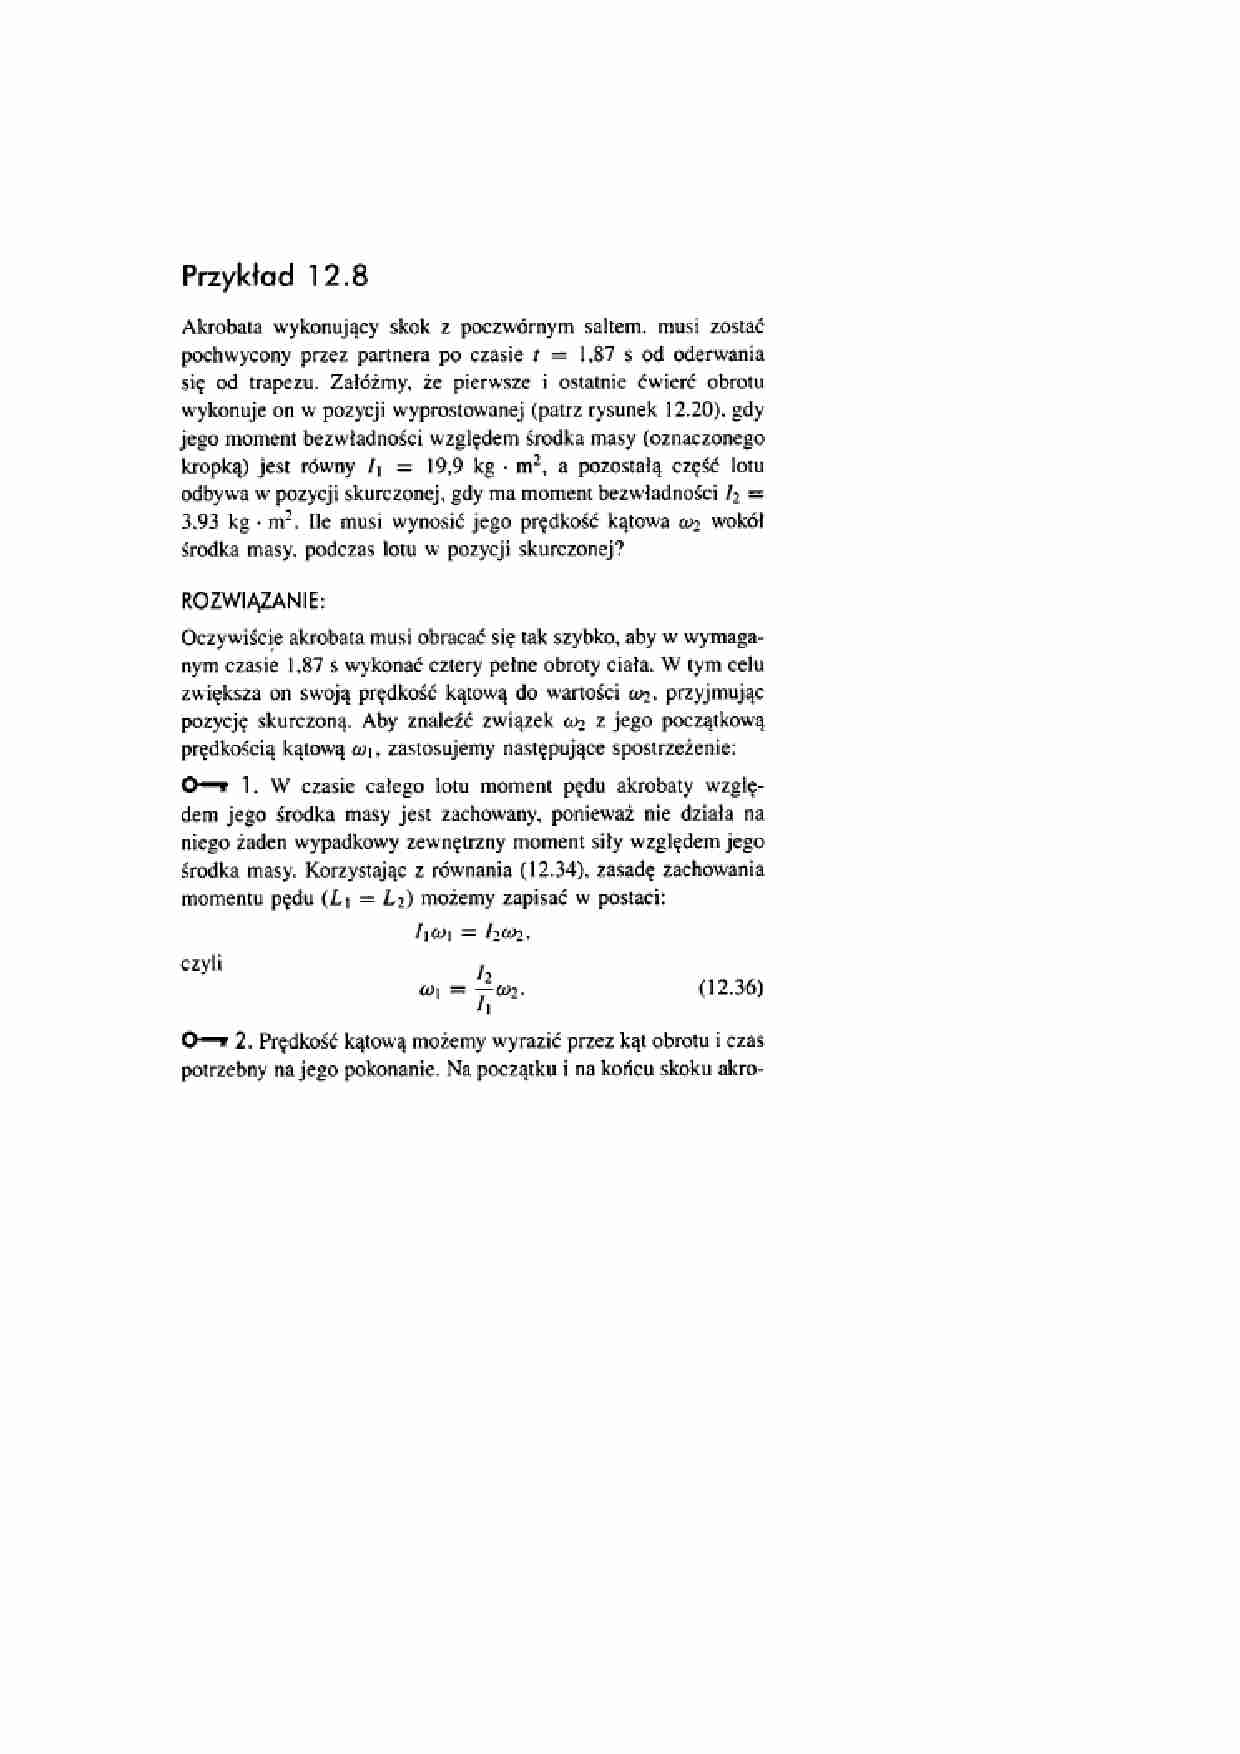 Analiza matematyczna - zadanie - strona 1